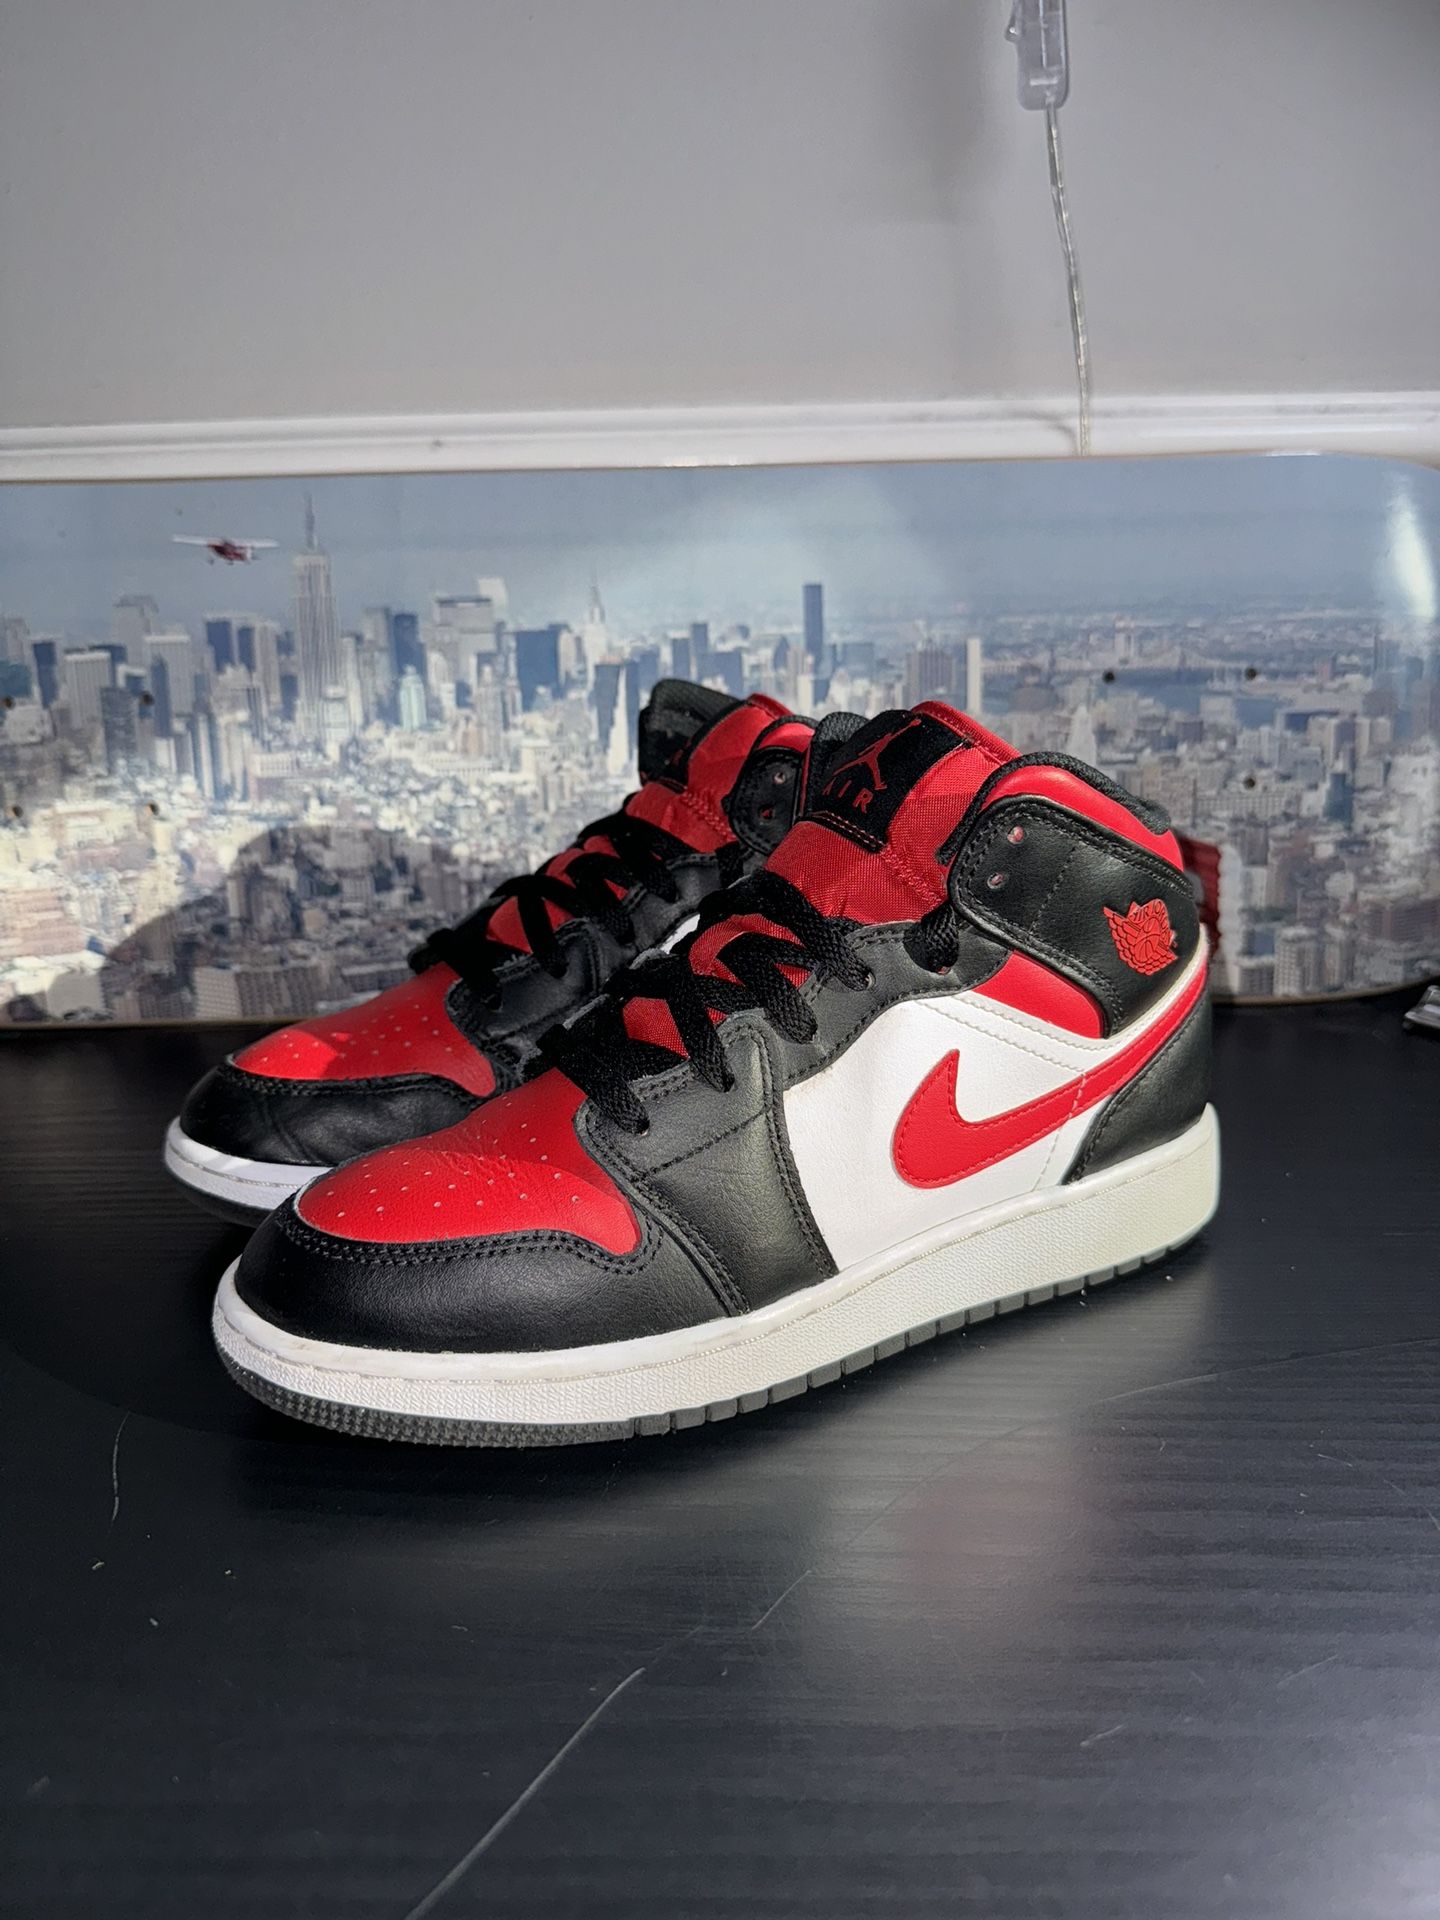 Nike Air Jordan 1 Mid GS Sz 5.5Y Black Fire Red White 554725-079 Kid’s Sneakers